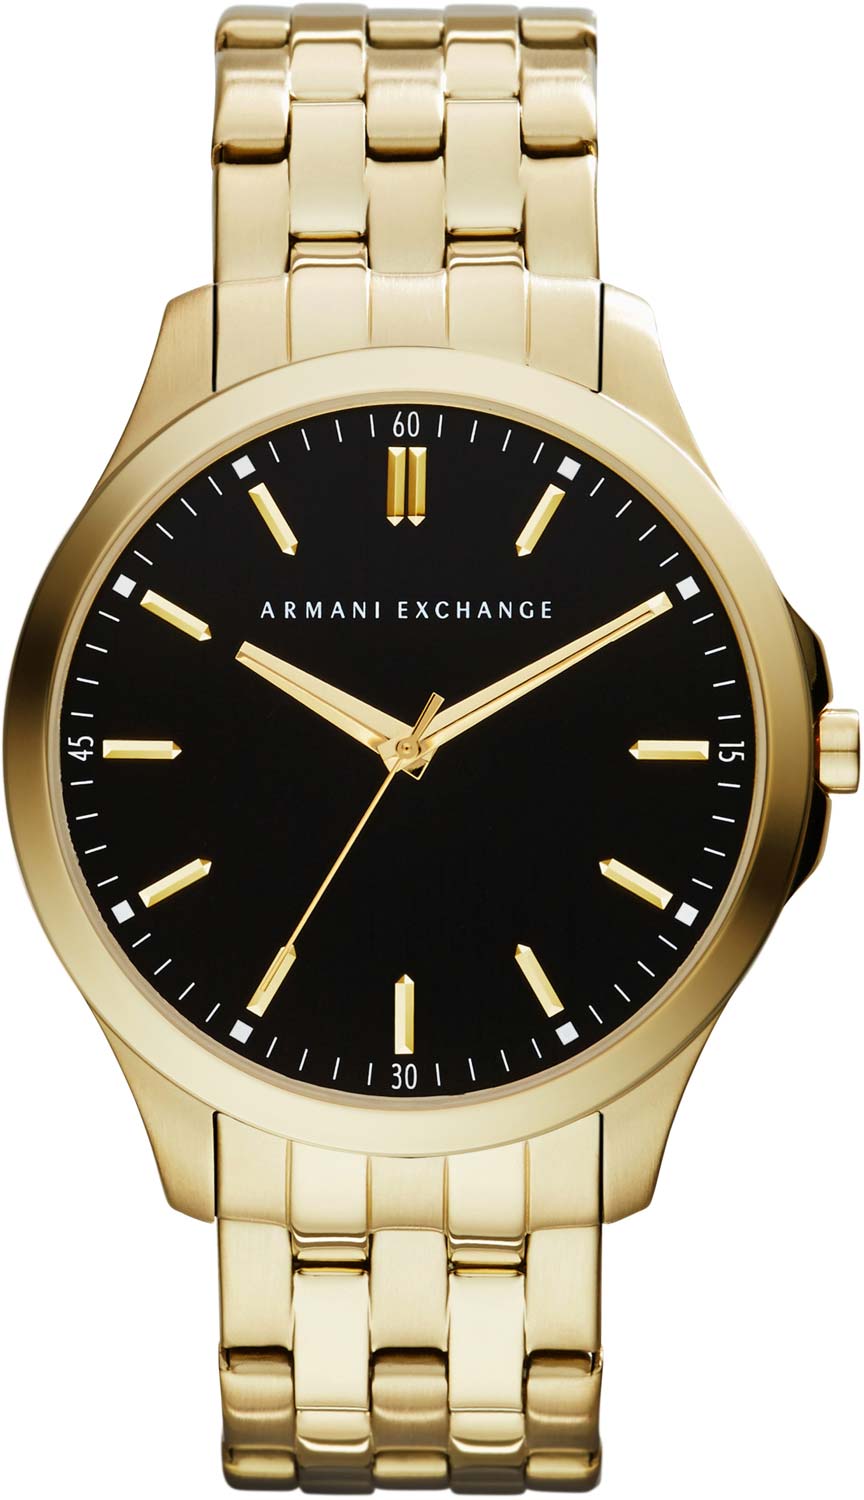   Armani Exchange AX2145